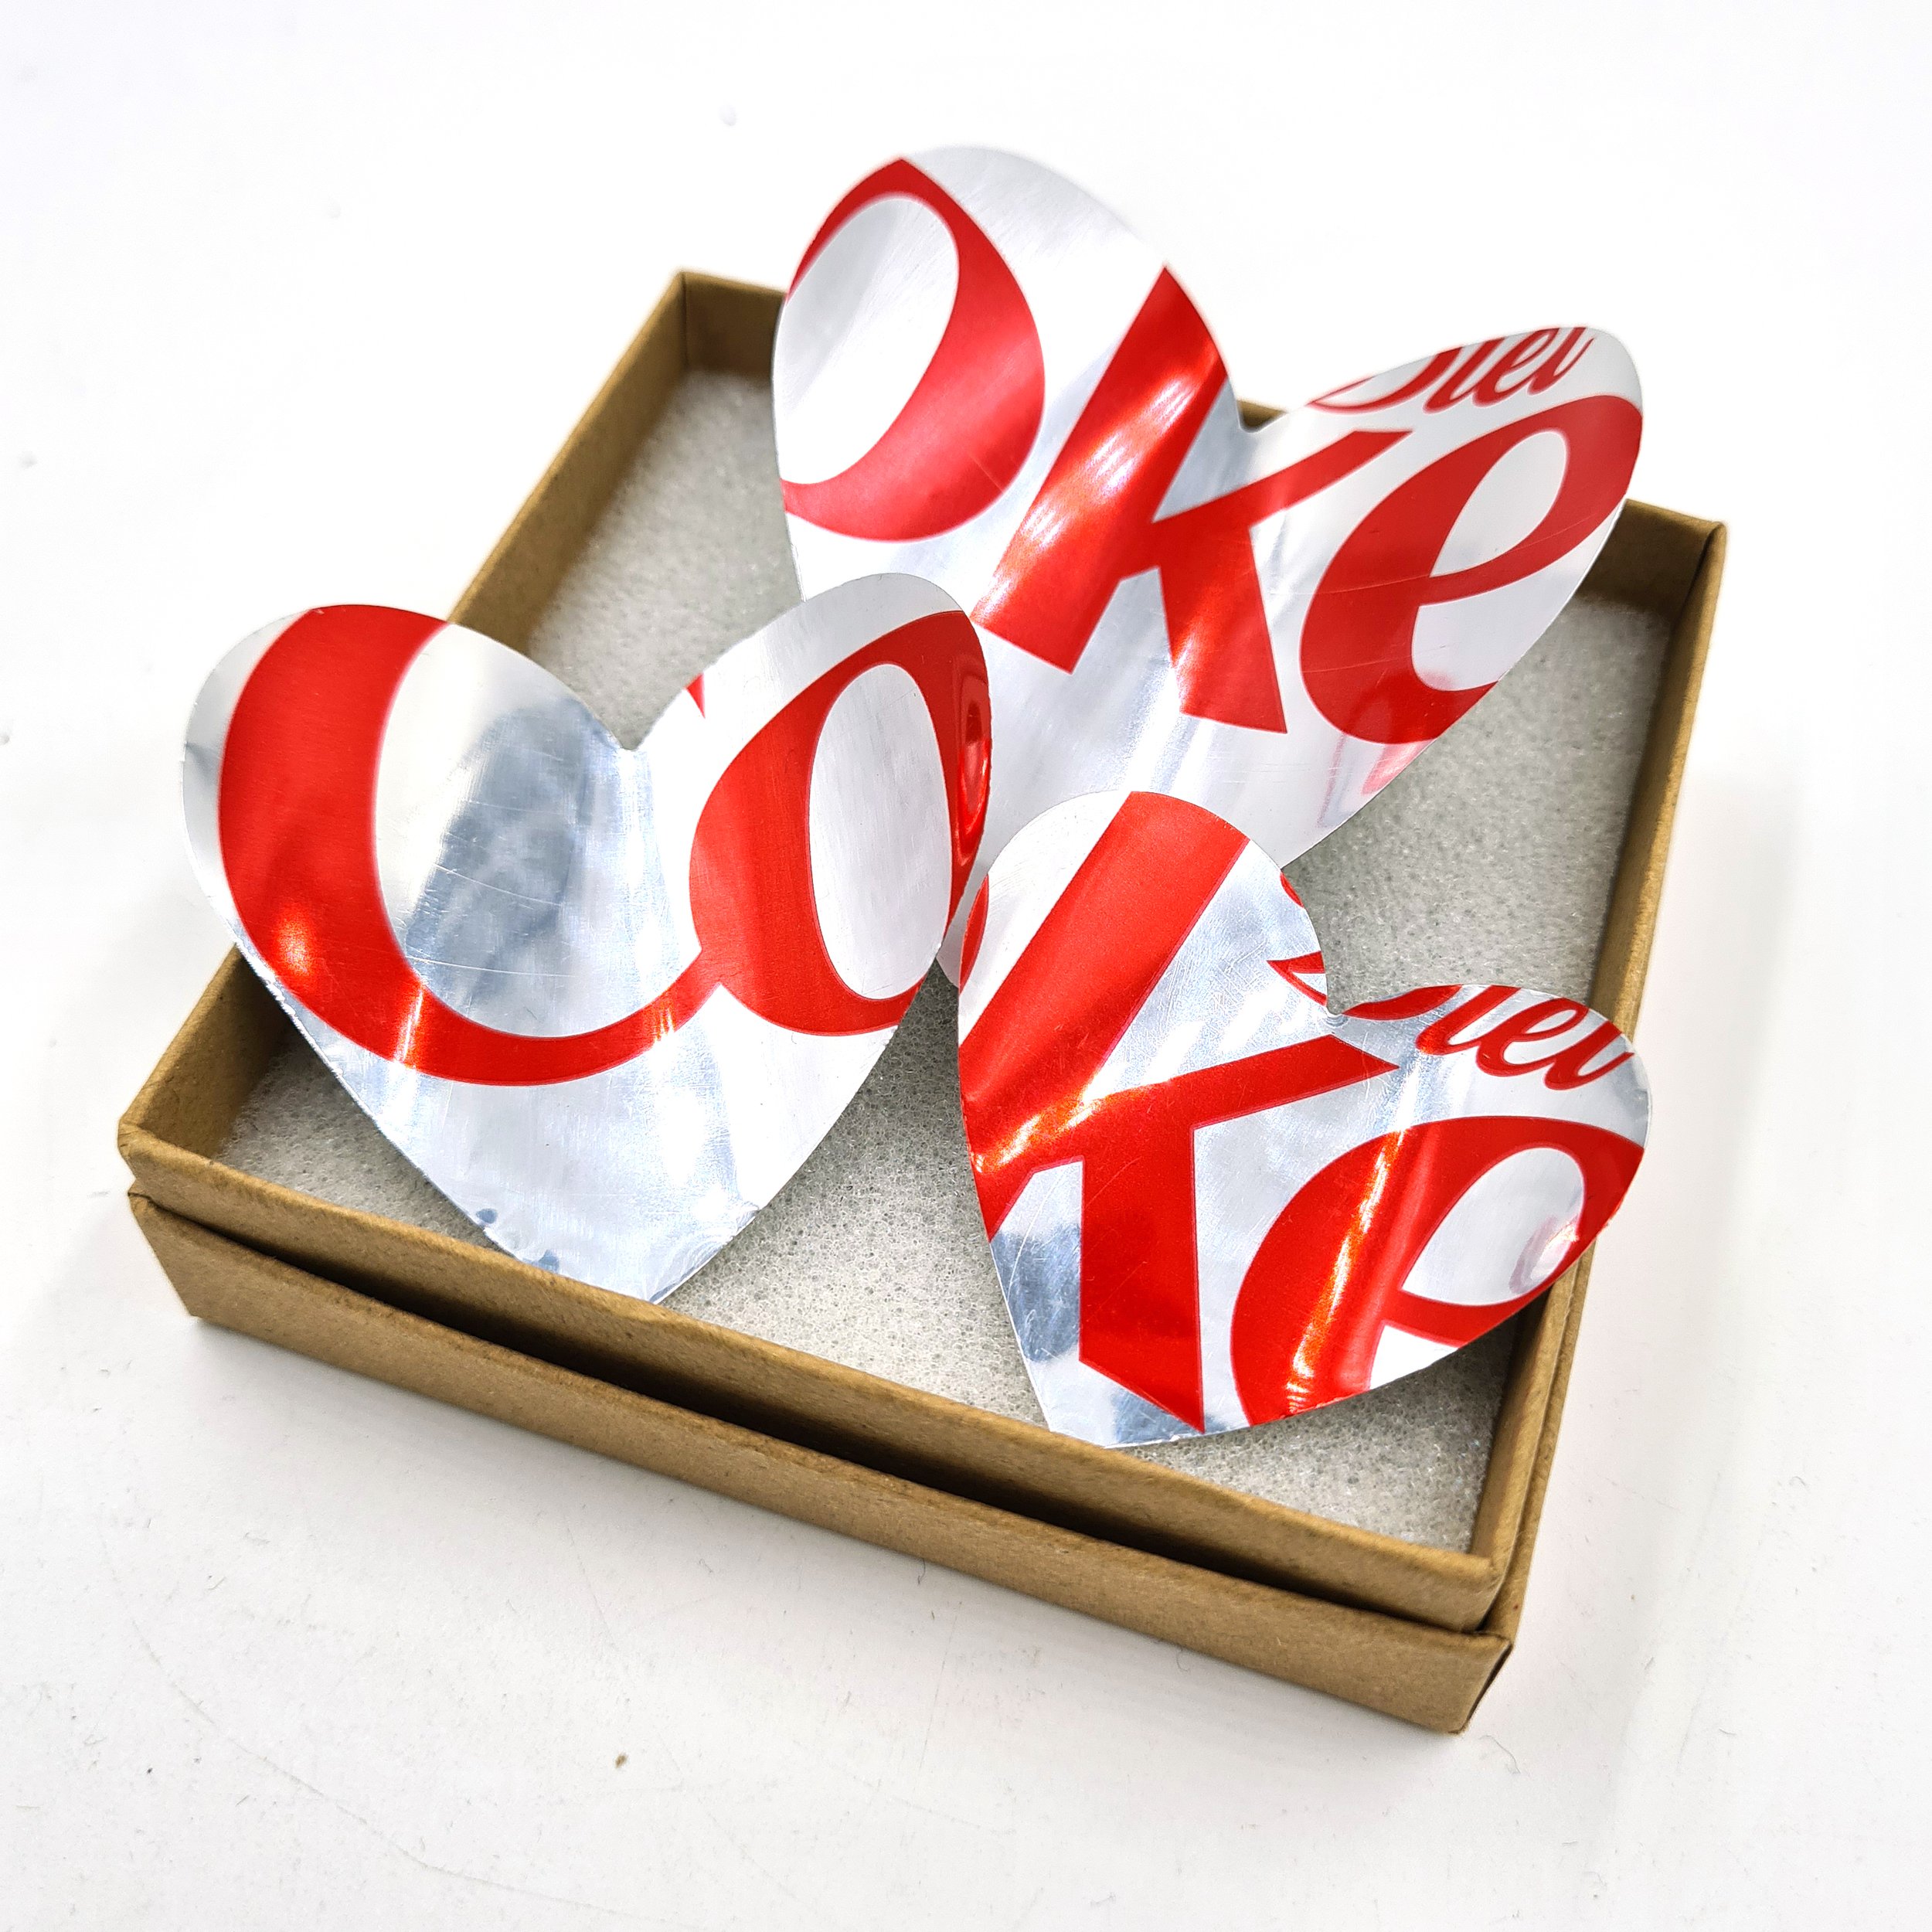 Diet Coke Heart Drinks Can Fridge Magnets 4 in gift box.jpg